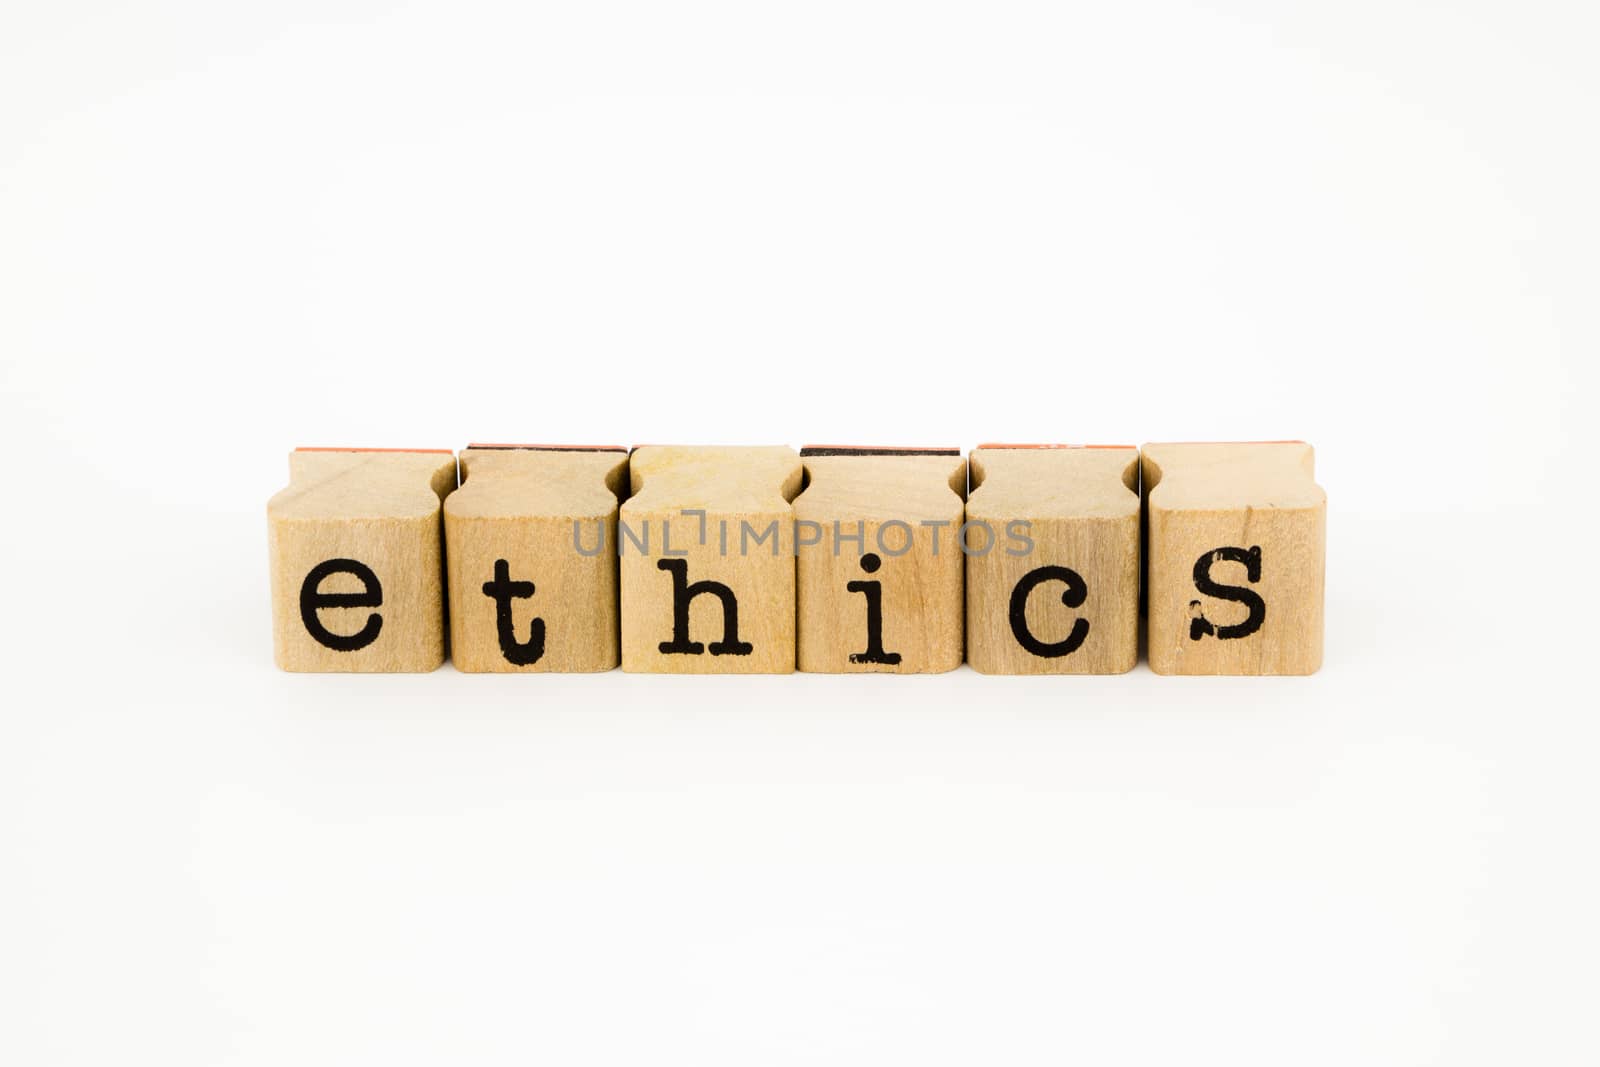 ethics wording isolate on white background by vinnstock